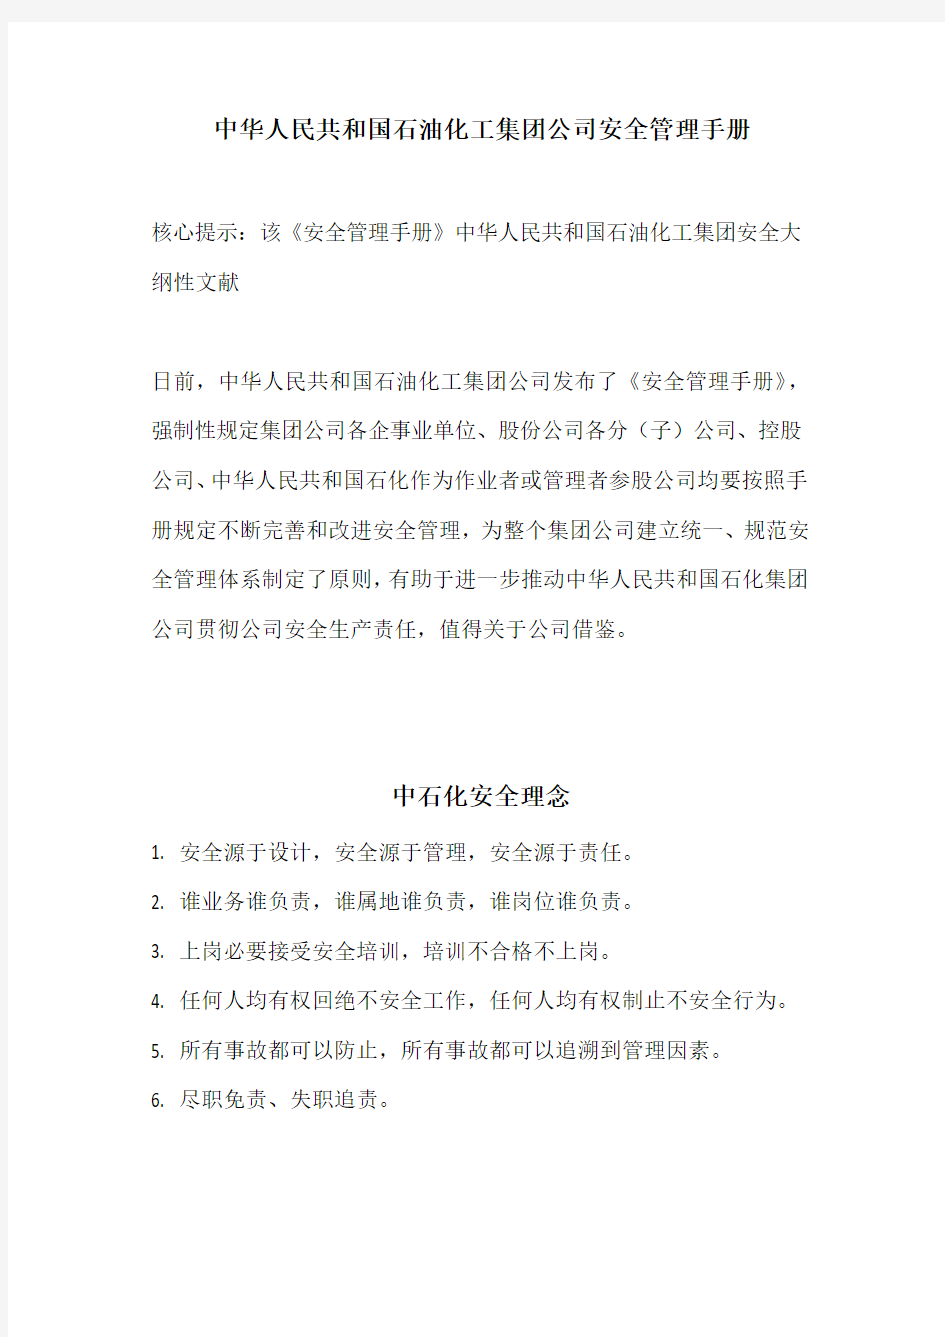 中国石油化工集团公司安全管理手册样本